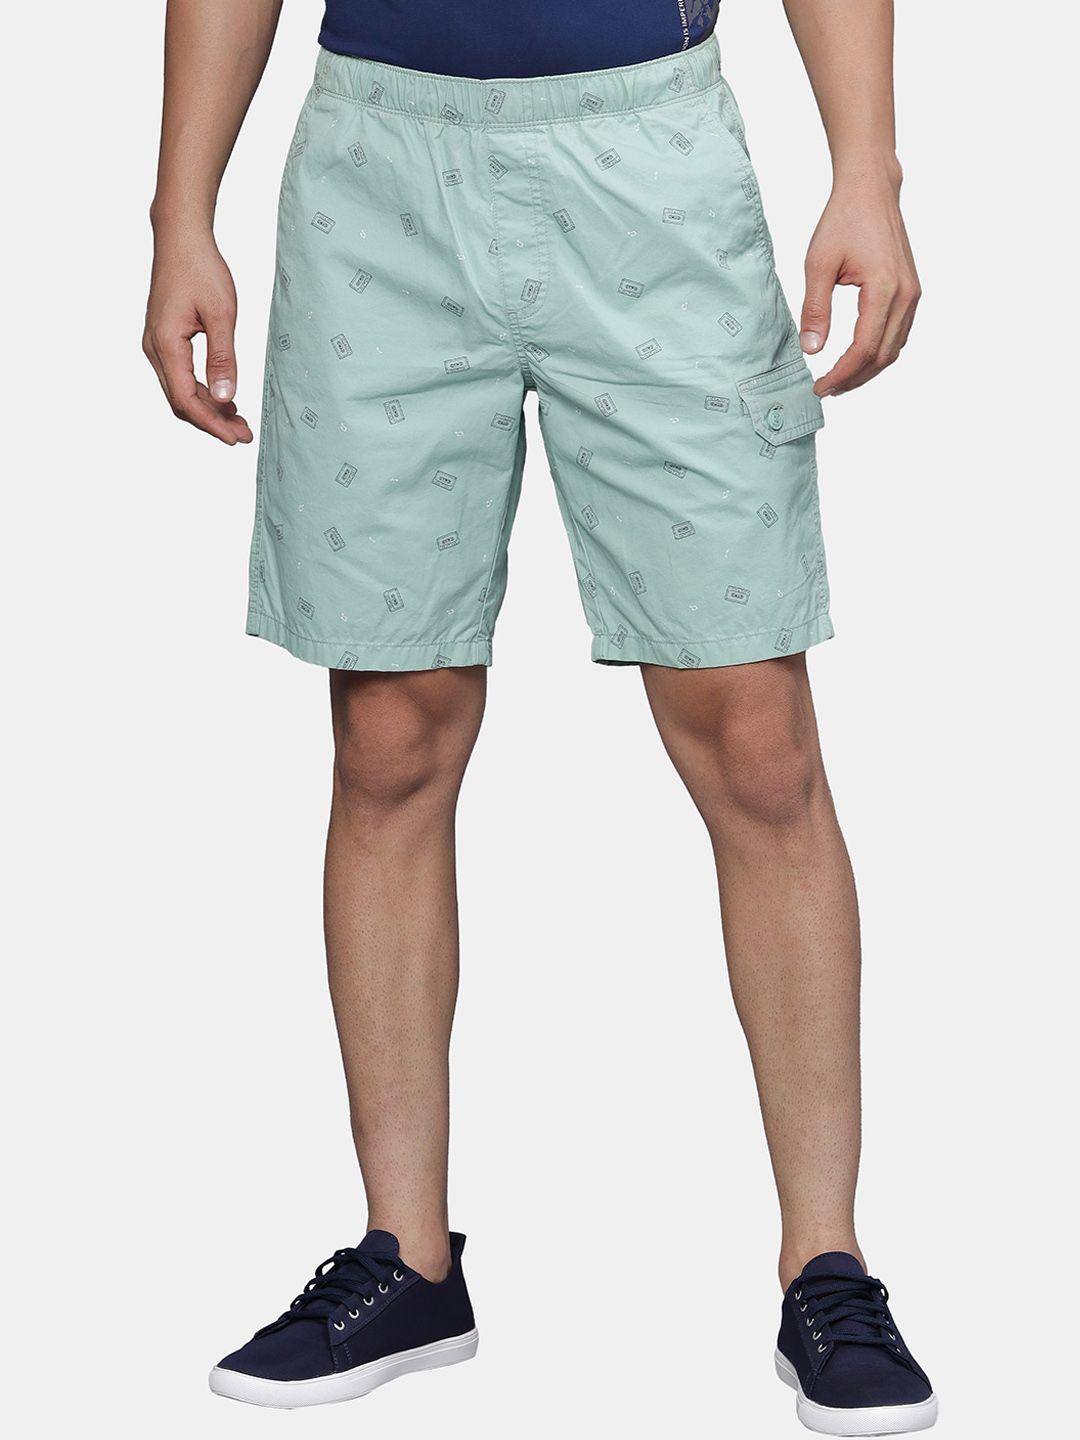 t-base men conversational printed cotton regular shorts